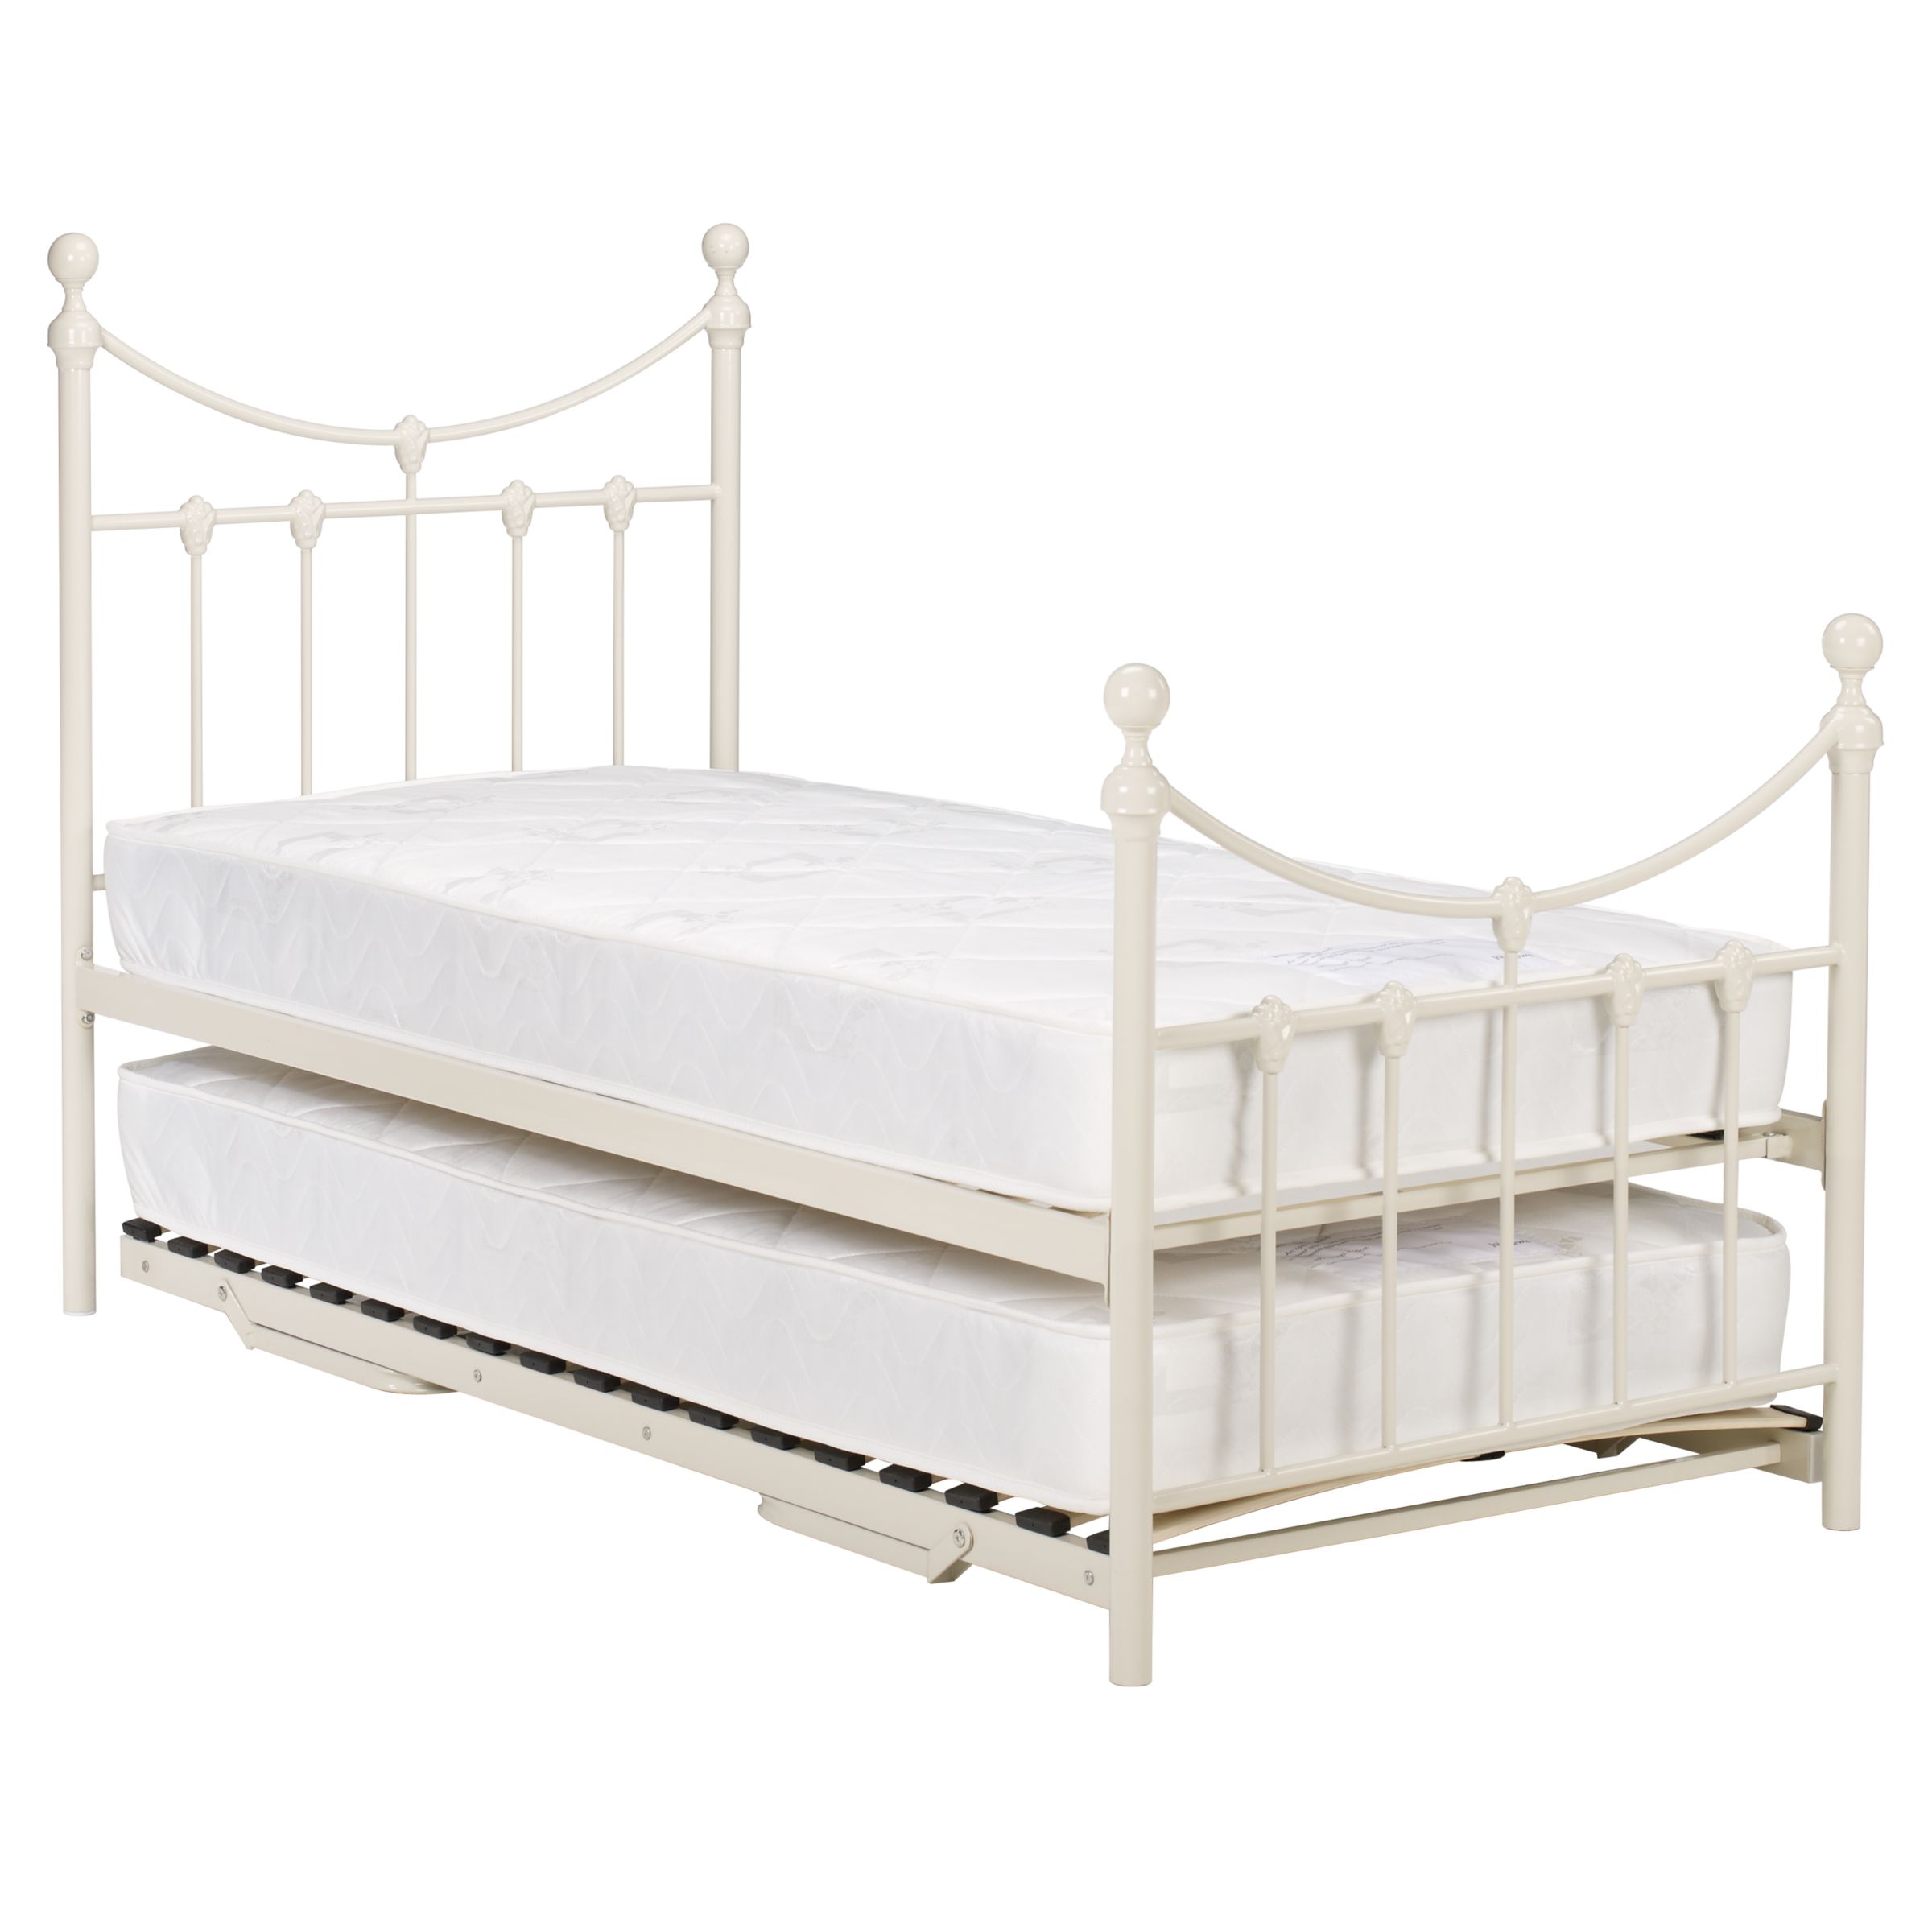 Ella Guest Bed, Single